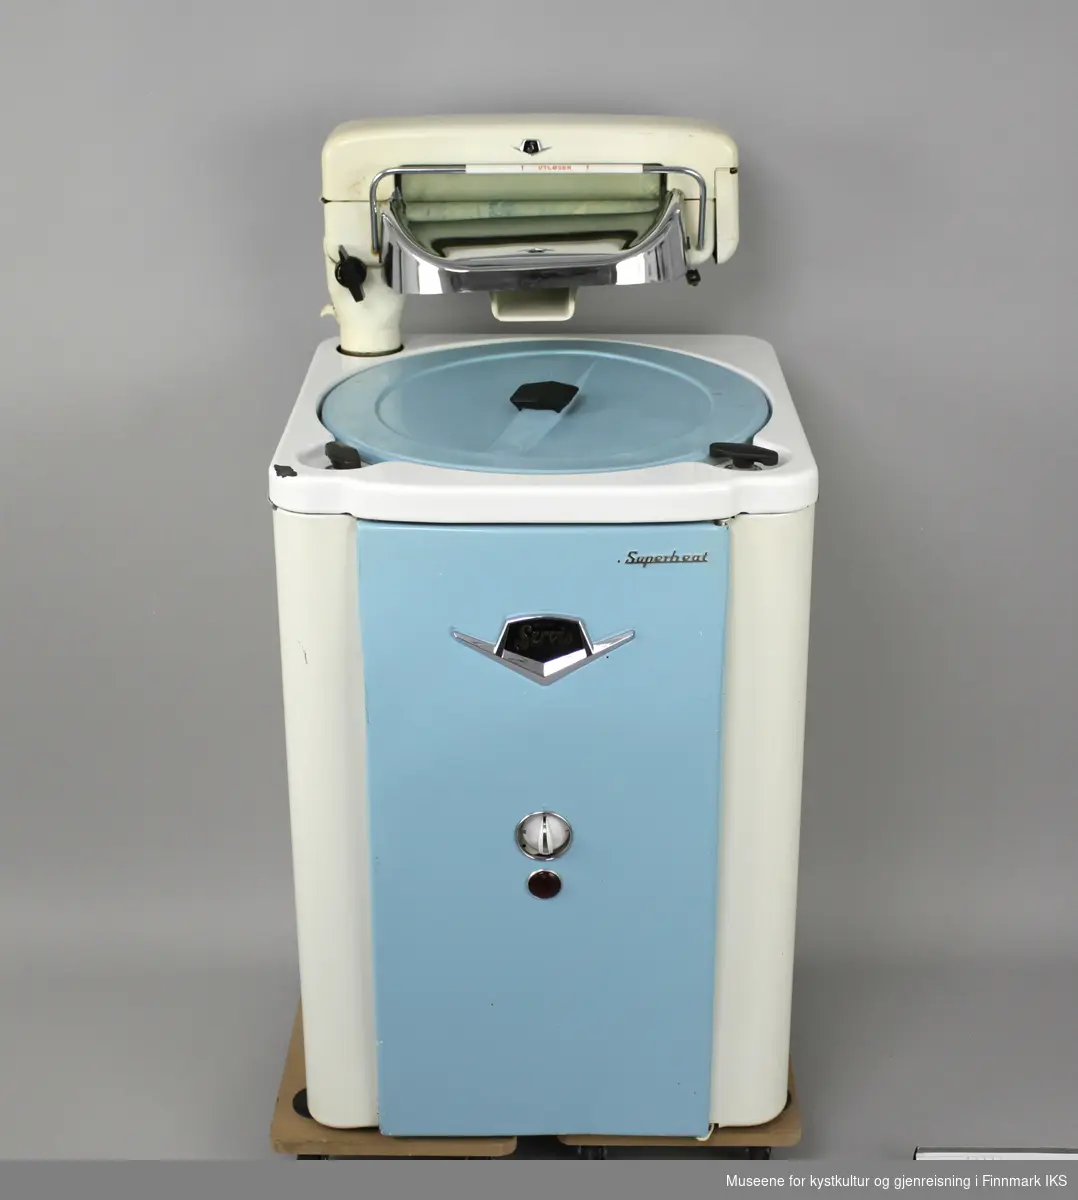 Denne vaskemaskinen er av emaljert metall, har avrundede kanter og en frontdør og lokk i blå lakkert metall. Maskinen har en bryter og en driftslys foran. 
Maskinen har en tilhørende elektrisk vrider (GMH.00891) som er festet på toppen. Vaskemaskinen er en såkalt "Agitatormaskin". Det betyr at den har en skovl i bunnen som beveger seg frem og tilbake i vaskeprosessen. Maskinen har et varmeelement og en elektrisk vannpumpe, samt fire hjul under. Hjulene er ikke montert. 
Oppå maskinen er en hendel som er merket: PUMPE PÅ-AV og hendel merket: TREKK OPP FOR START VASK. Den hvite bryteren foran er merket: I, II og III. På hjulene står det: FLEXELLO/MADE IN ENGLAND. Bak på døra er det skilt med følgende påskrifter: MÅ BARE TILKOBLES JORDINGSKONTAKT / 16 M 195299 MANUFACTURED BY WILKIN & MITCHELL LTD/ DARLASTON.S.SAFF. ENGLAND / Type E Volt 220. 
Med maskinen følger det en bruksanvisning, en vaskeklype (GMH.000894) og en gummislange (GMH.000893). Pakningen er porøs og det er 5 deler avbrudd som følger med separat.